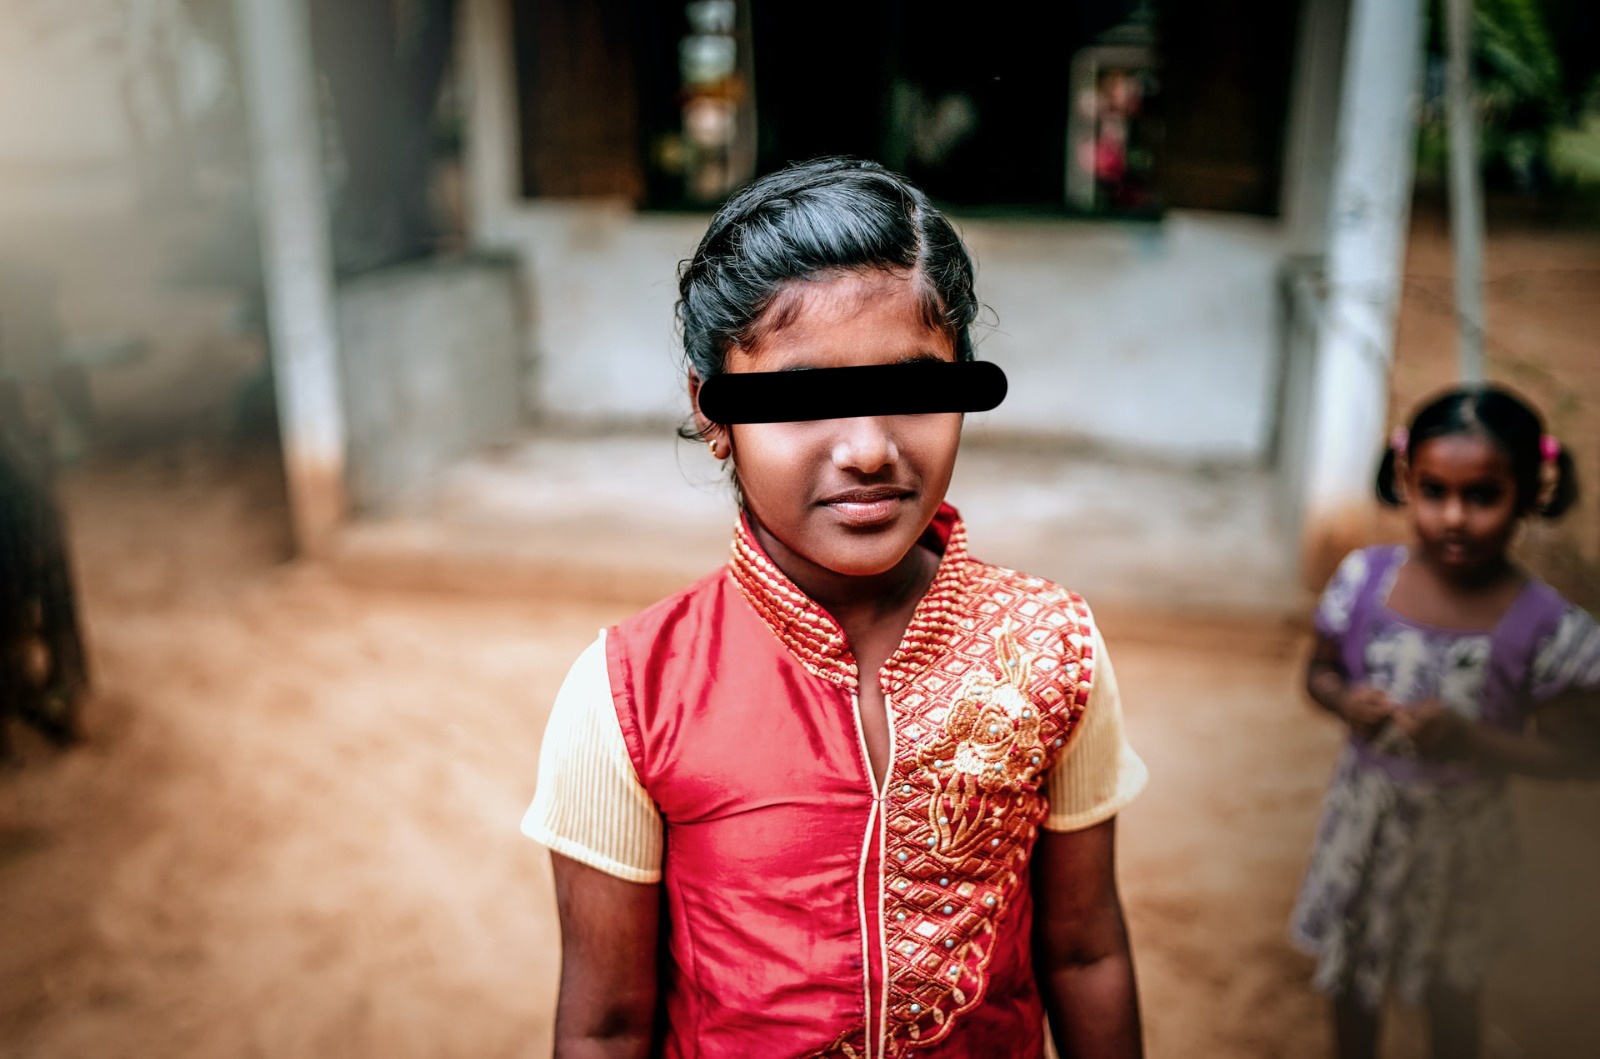 Índia: Meninas dedicadas à deusa hindu são forçadas a viver na prostituição